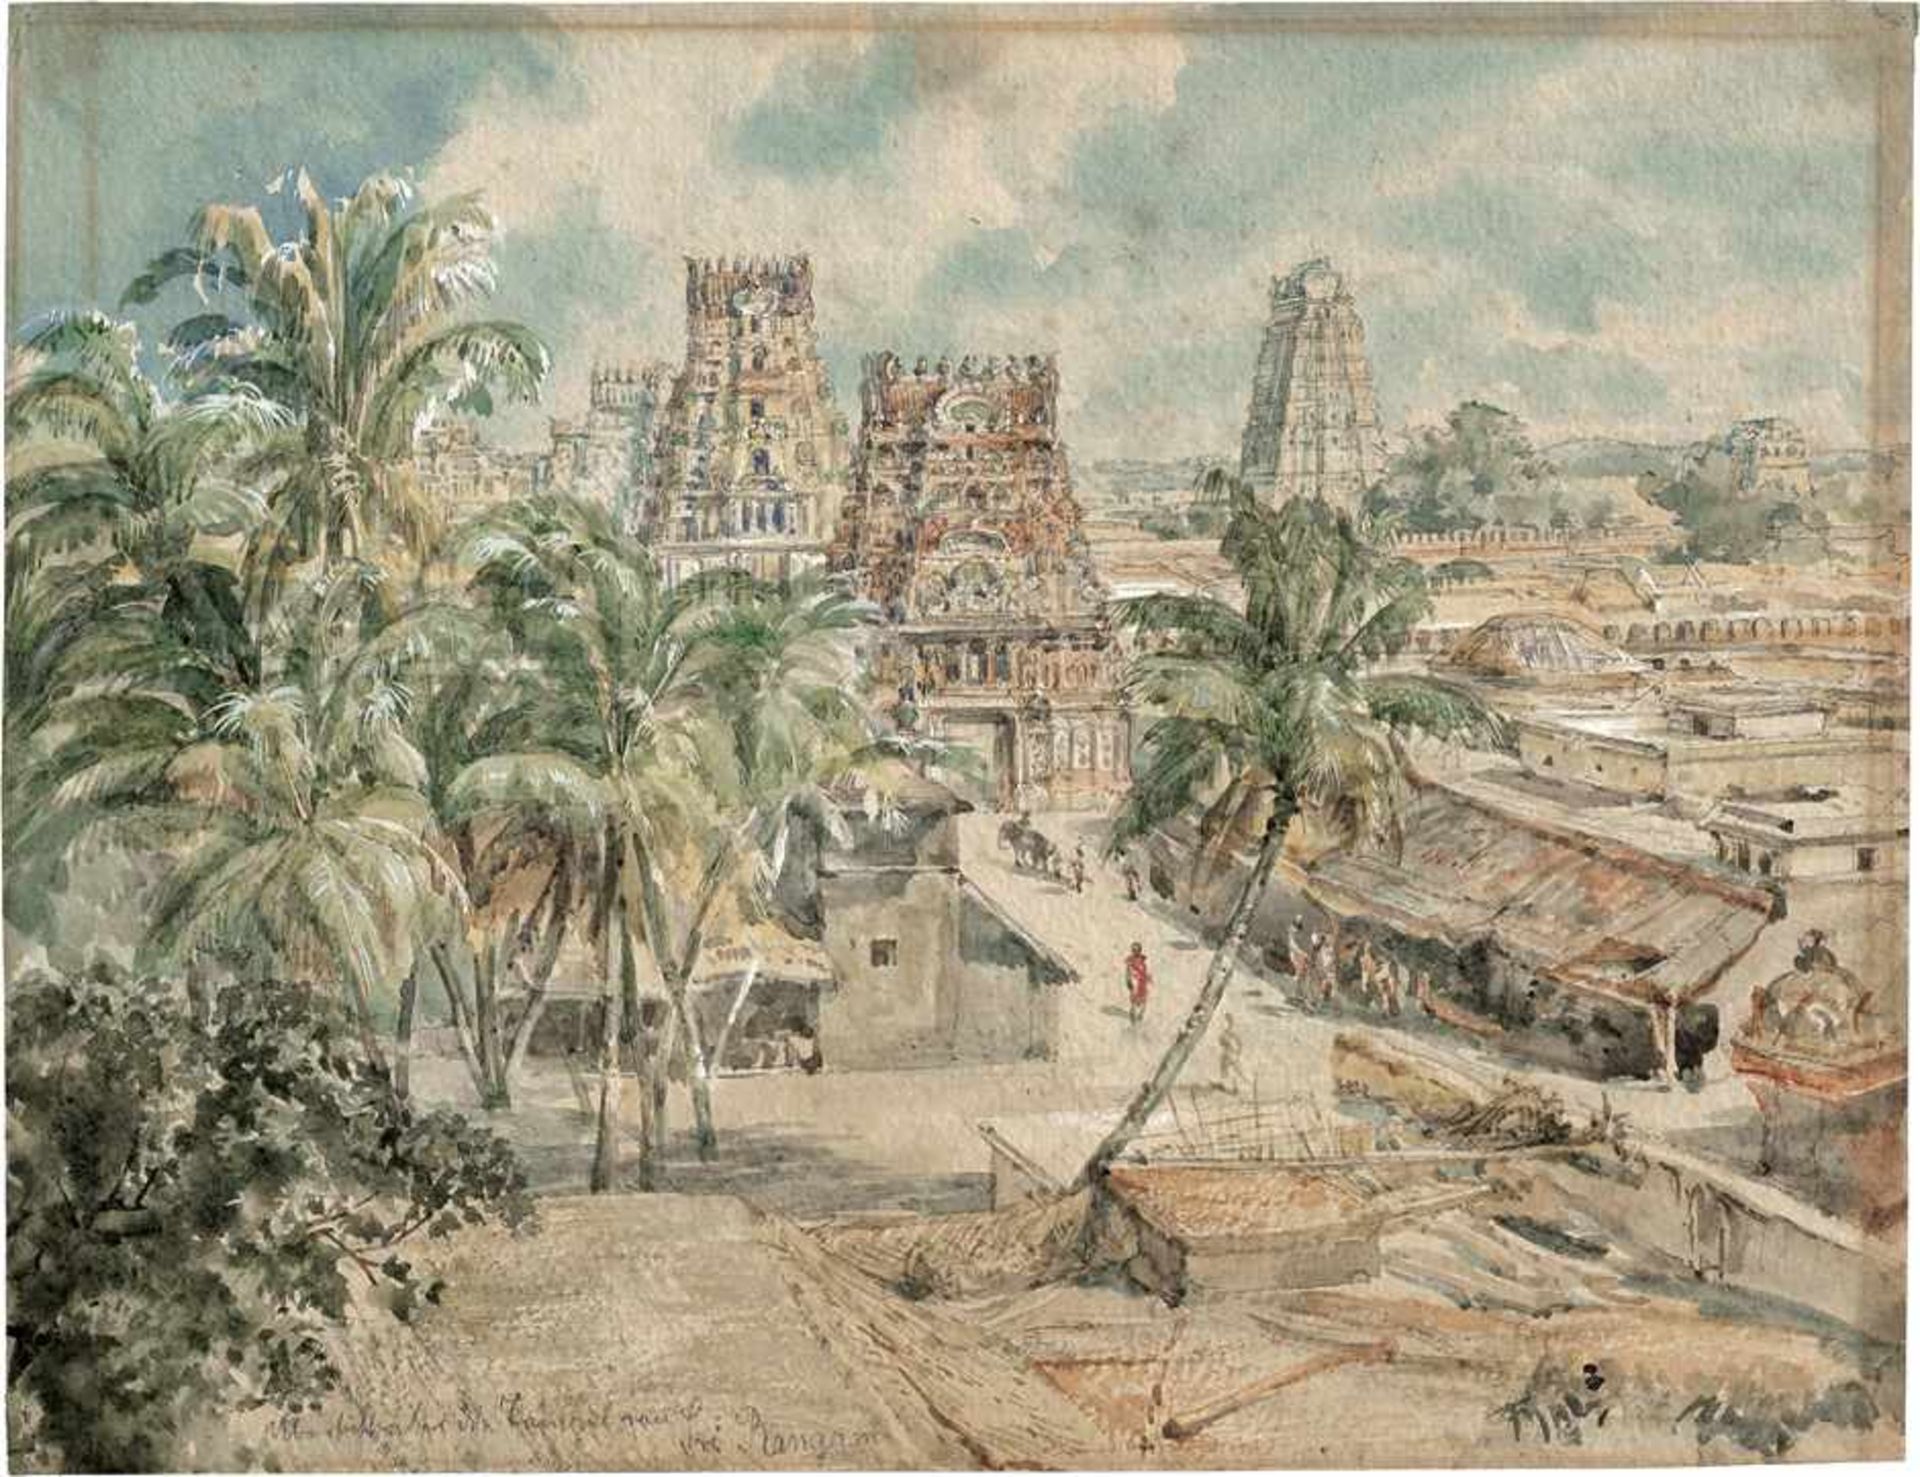 Deutsch: 19. Jh. Die hinduistischen Tempel von Srirangam in Südindien19. Jh. Die hinduistischen